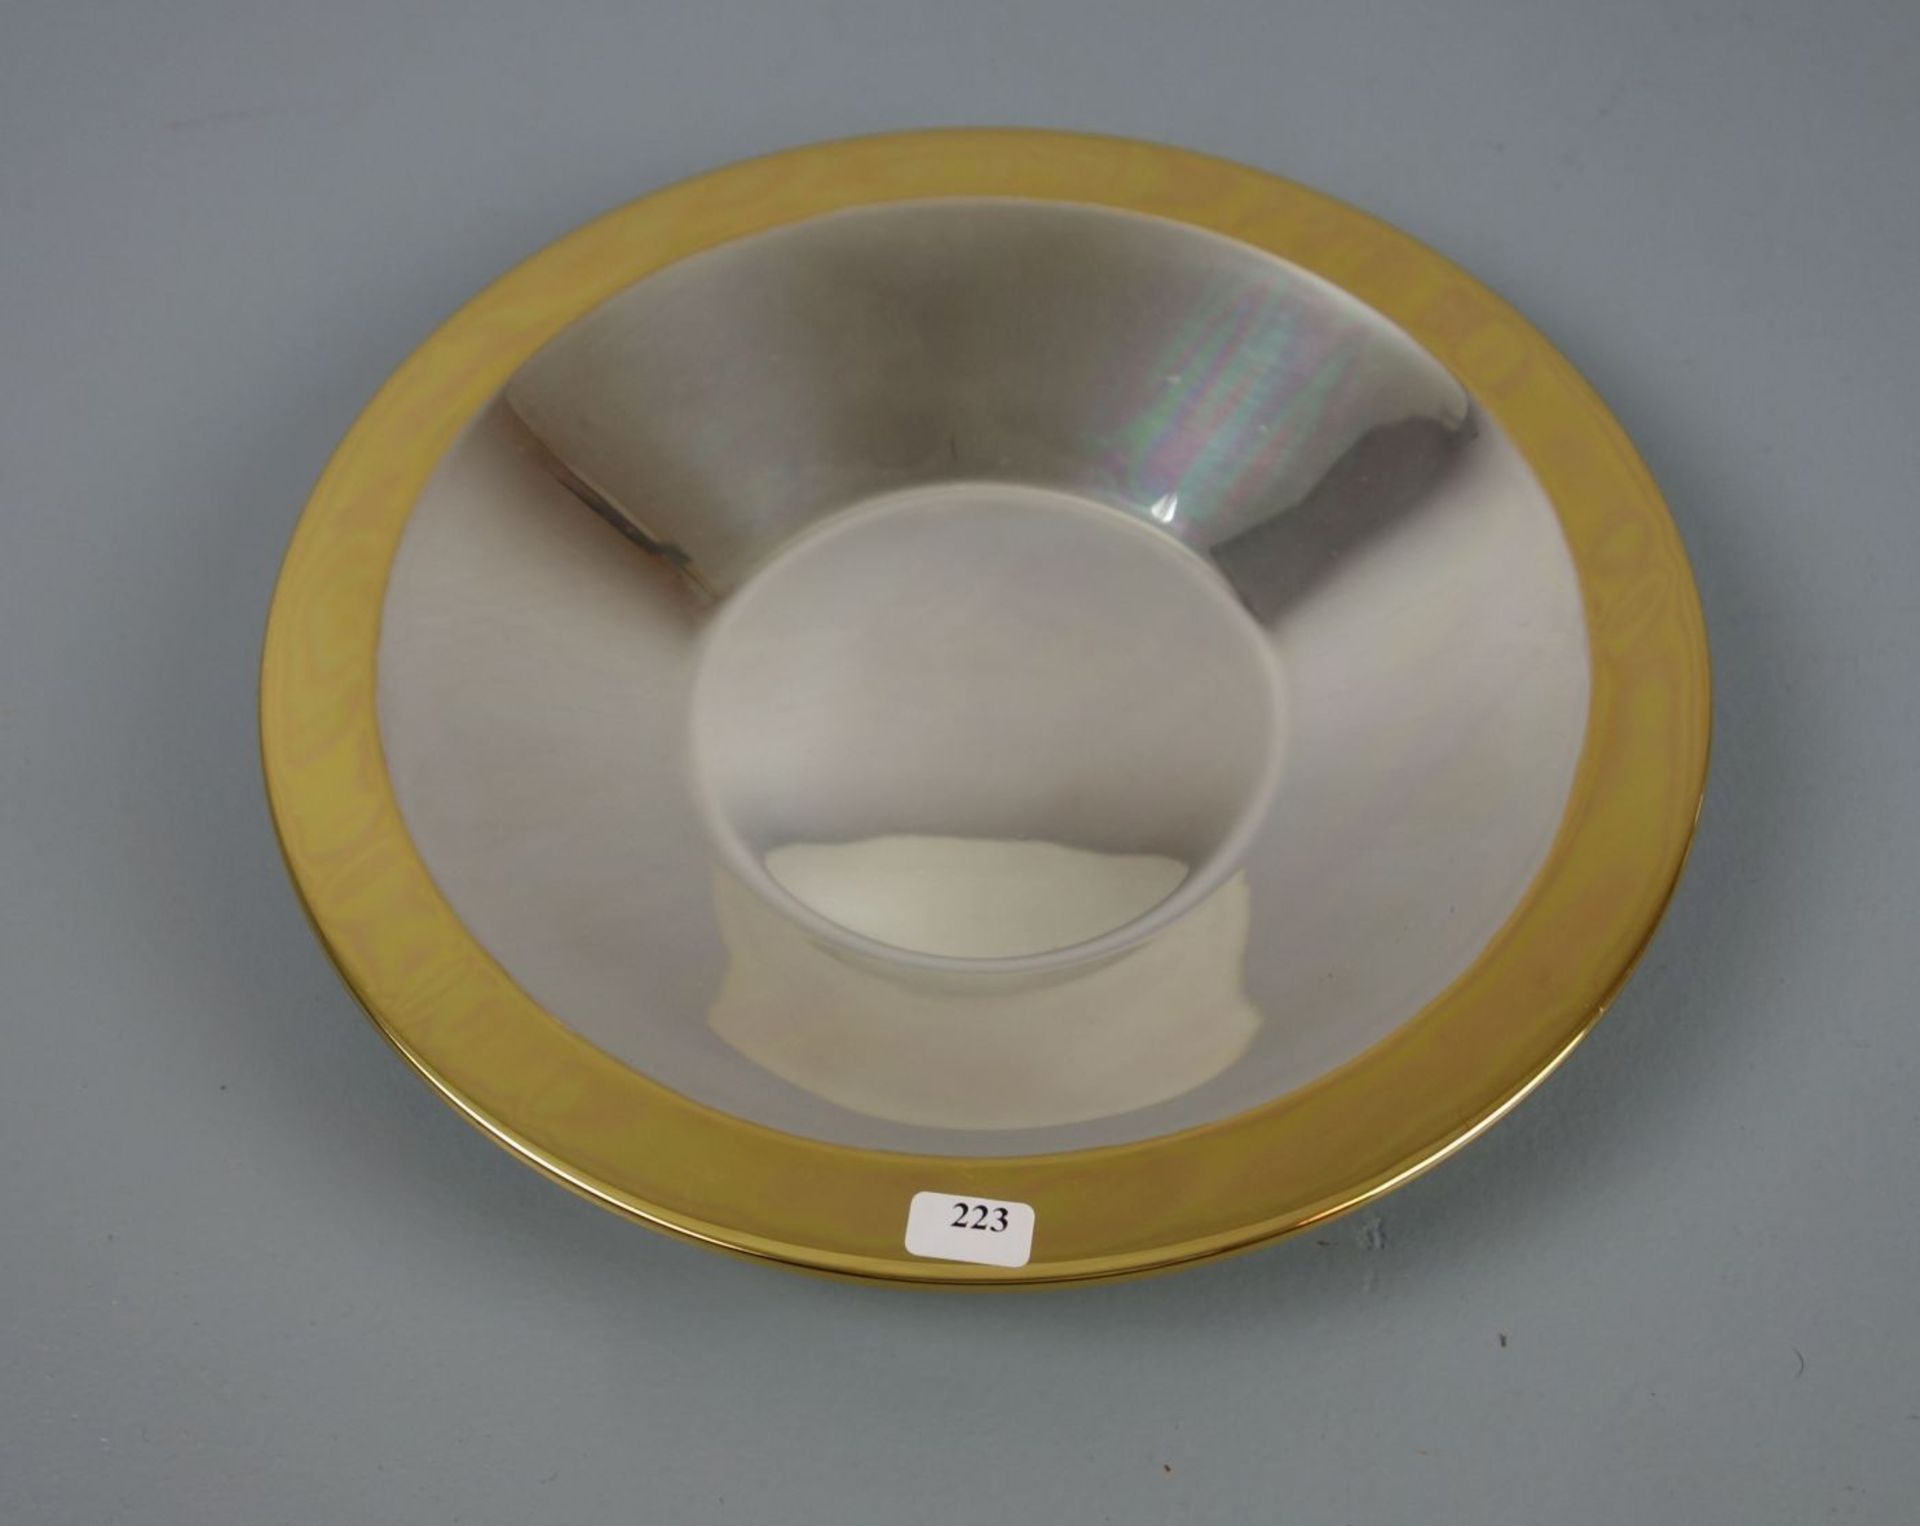 SCHALE / silver bowl, 835er Silber (345 g), Fa. Wilkens. Unter dem Stand mit Prägemarke "Wilkens" - Bild 2 aus 3